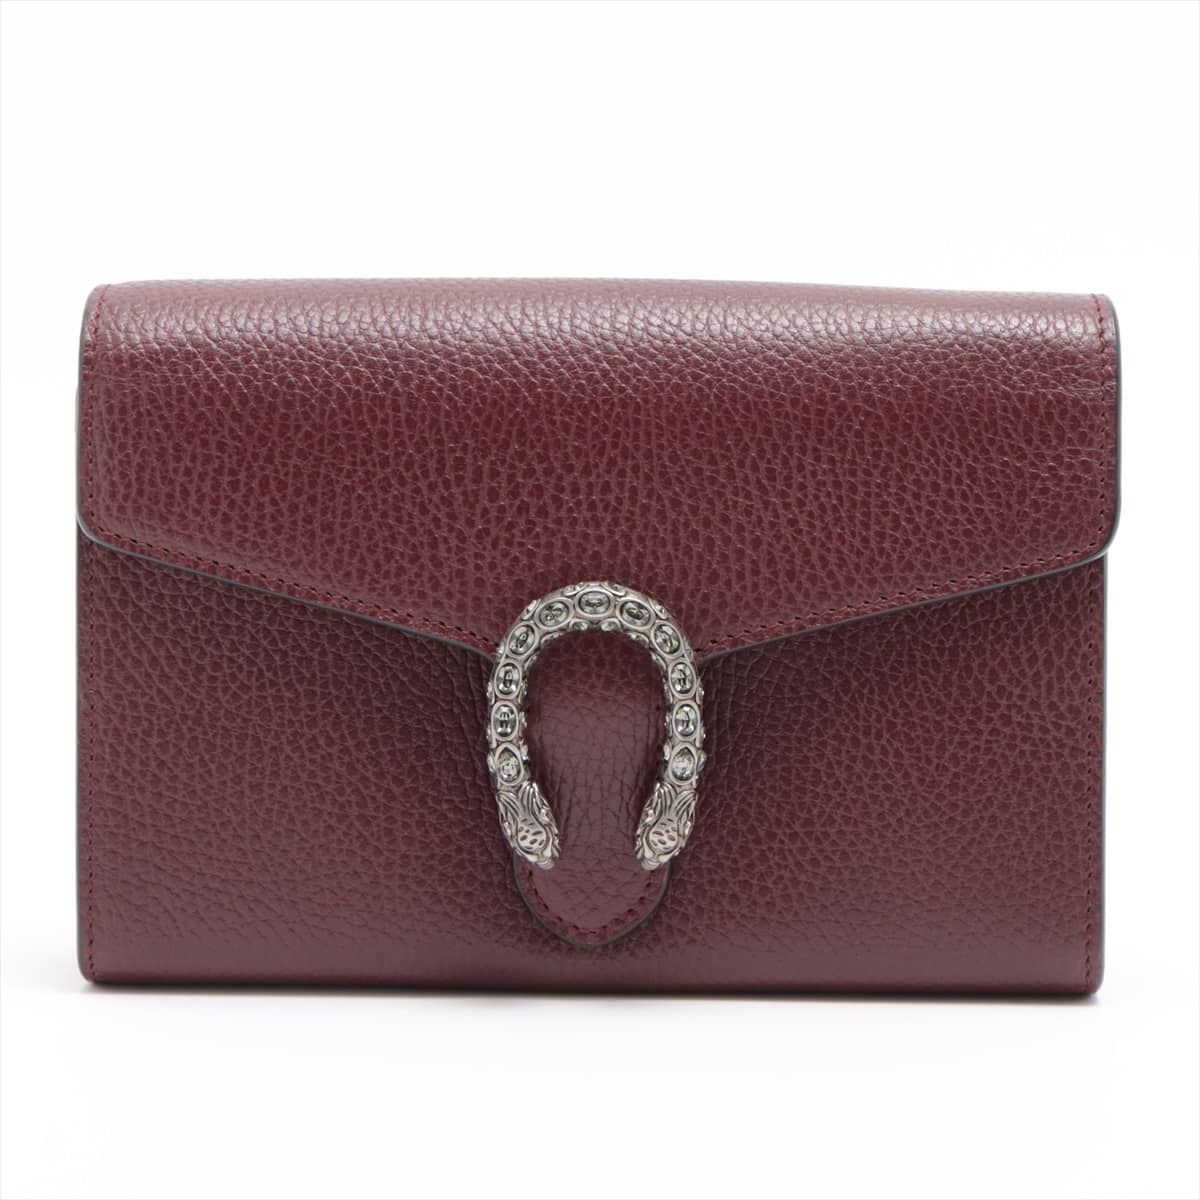 Gucci Dionysus Leather Chain shoulder bag Bordeaux 401231